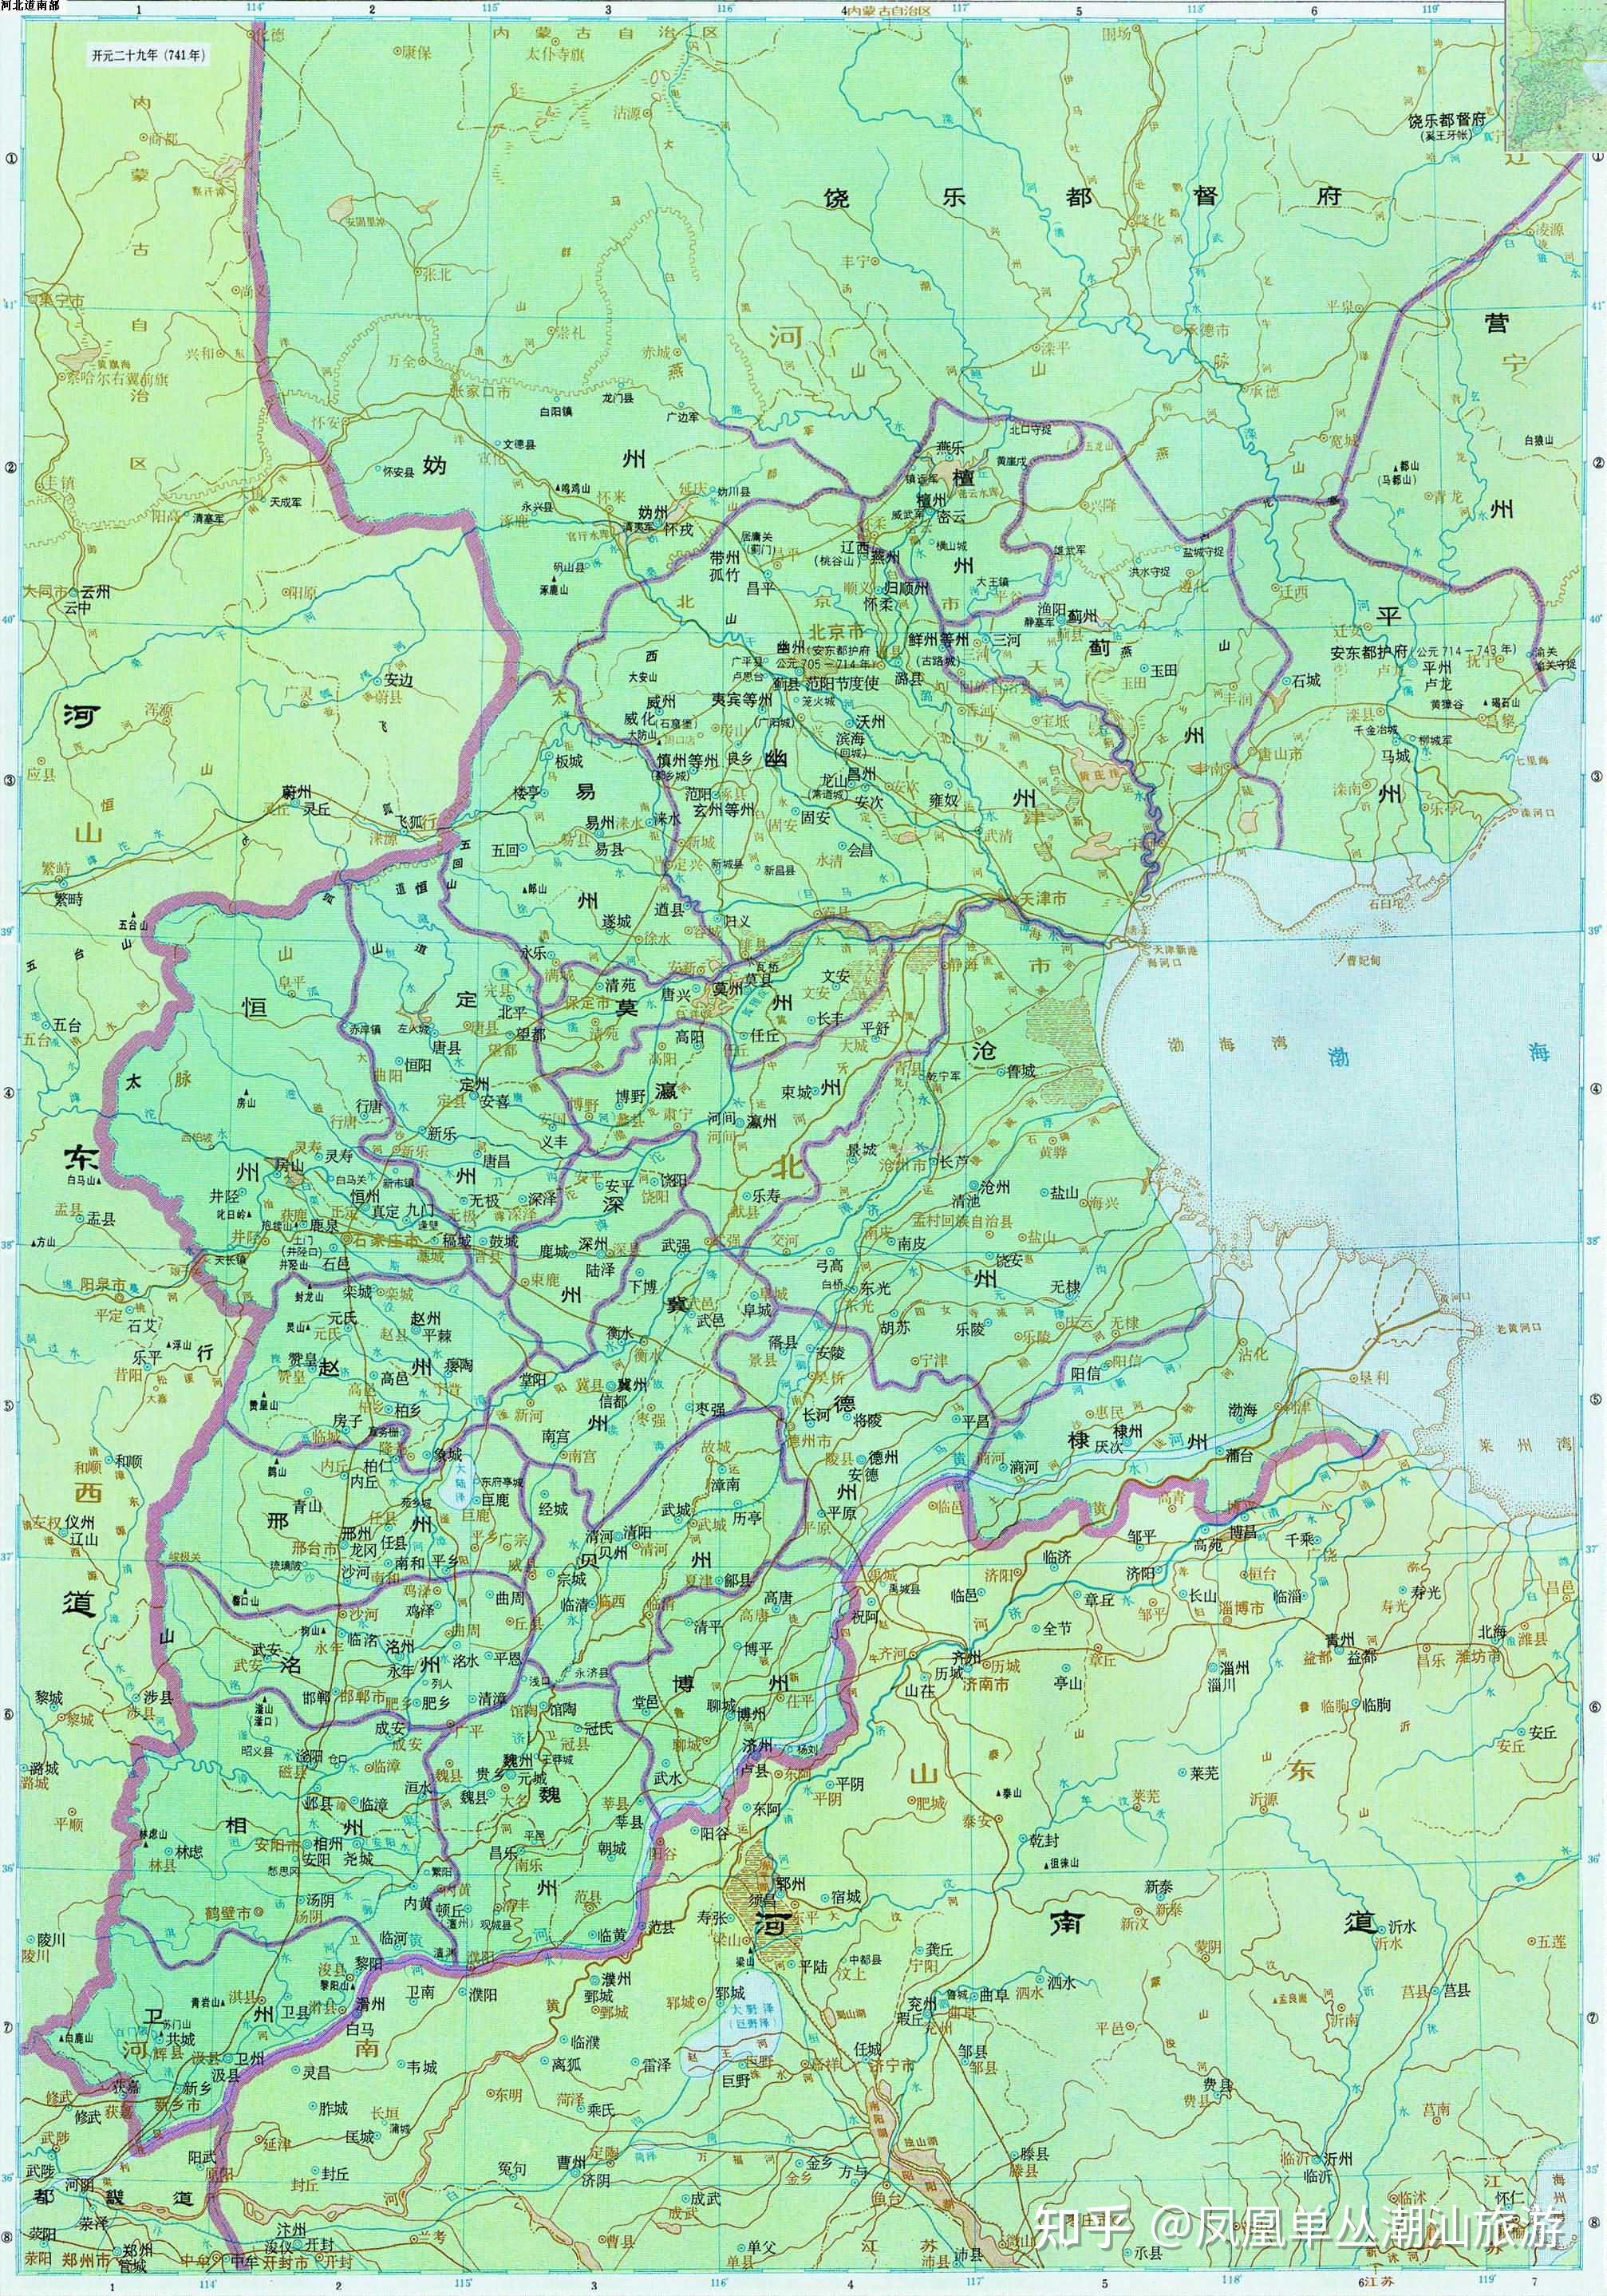 清朝直隶省历史沿革和区域划分,高清地图可收藏